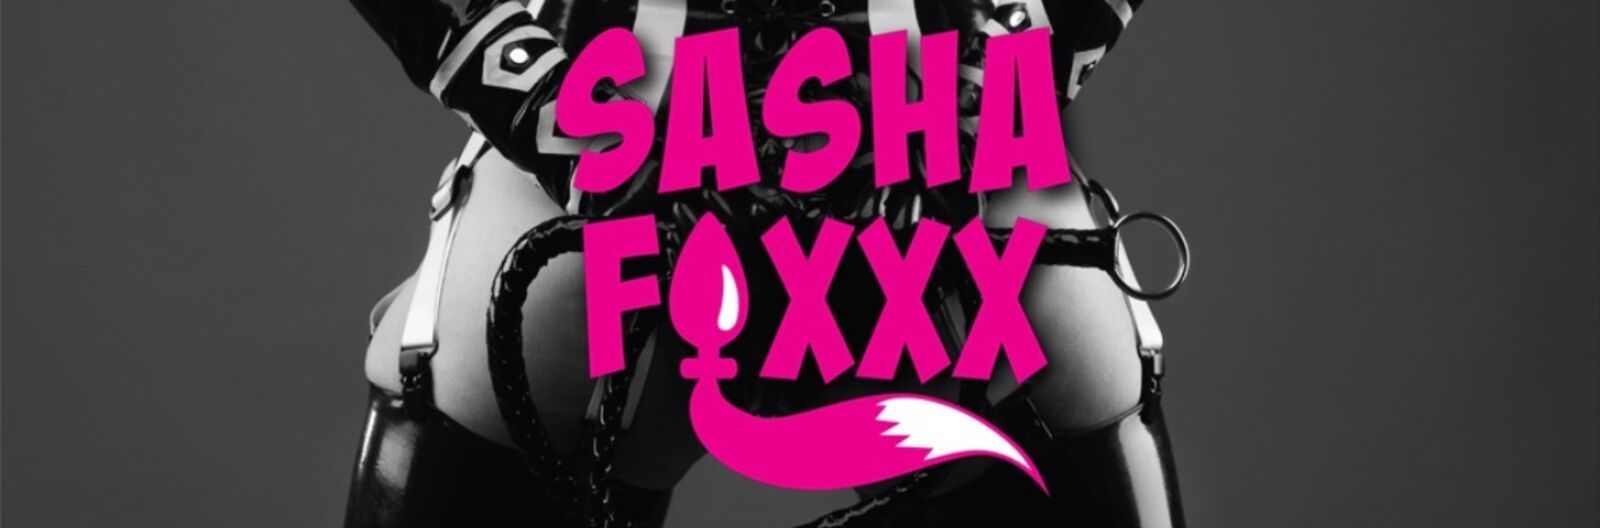 See TheSashaFoxxx profile